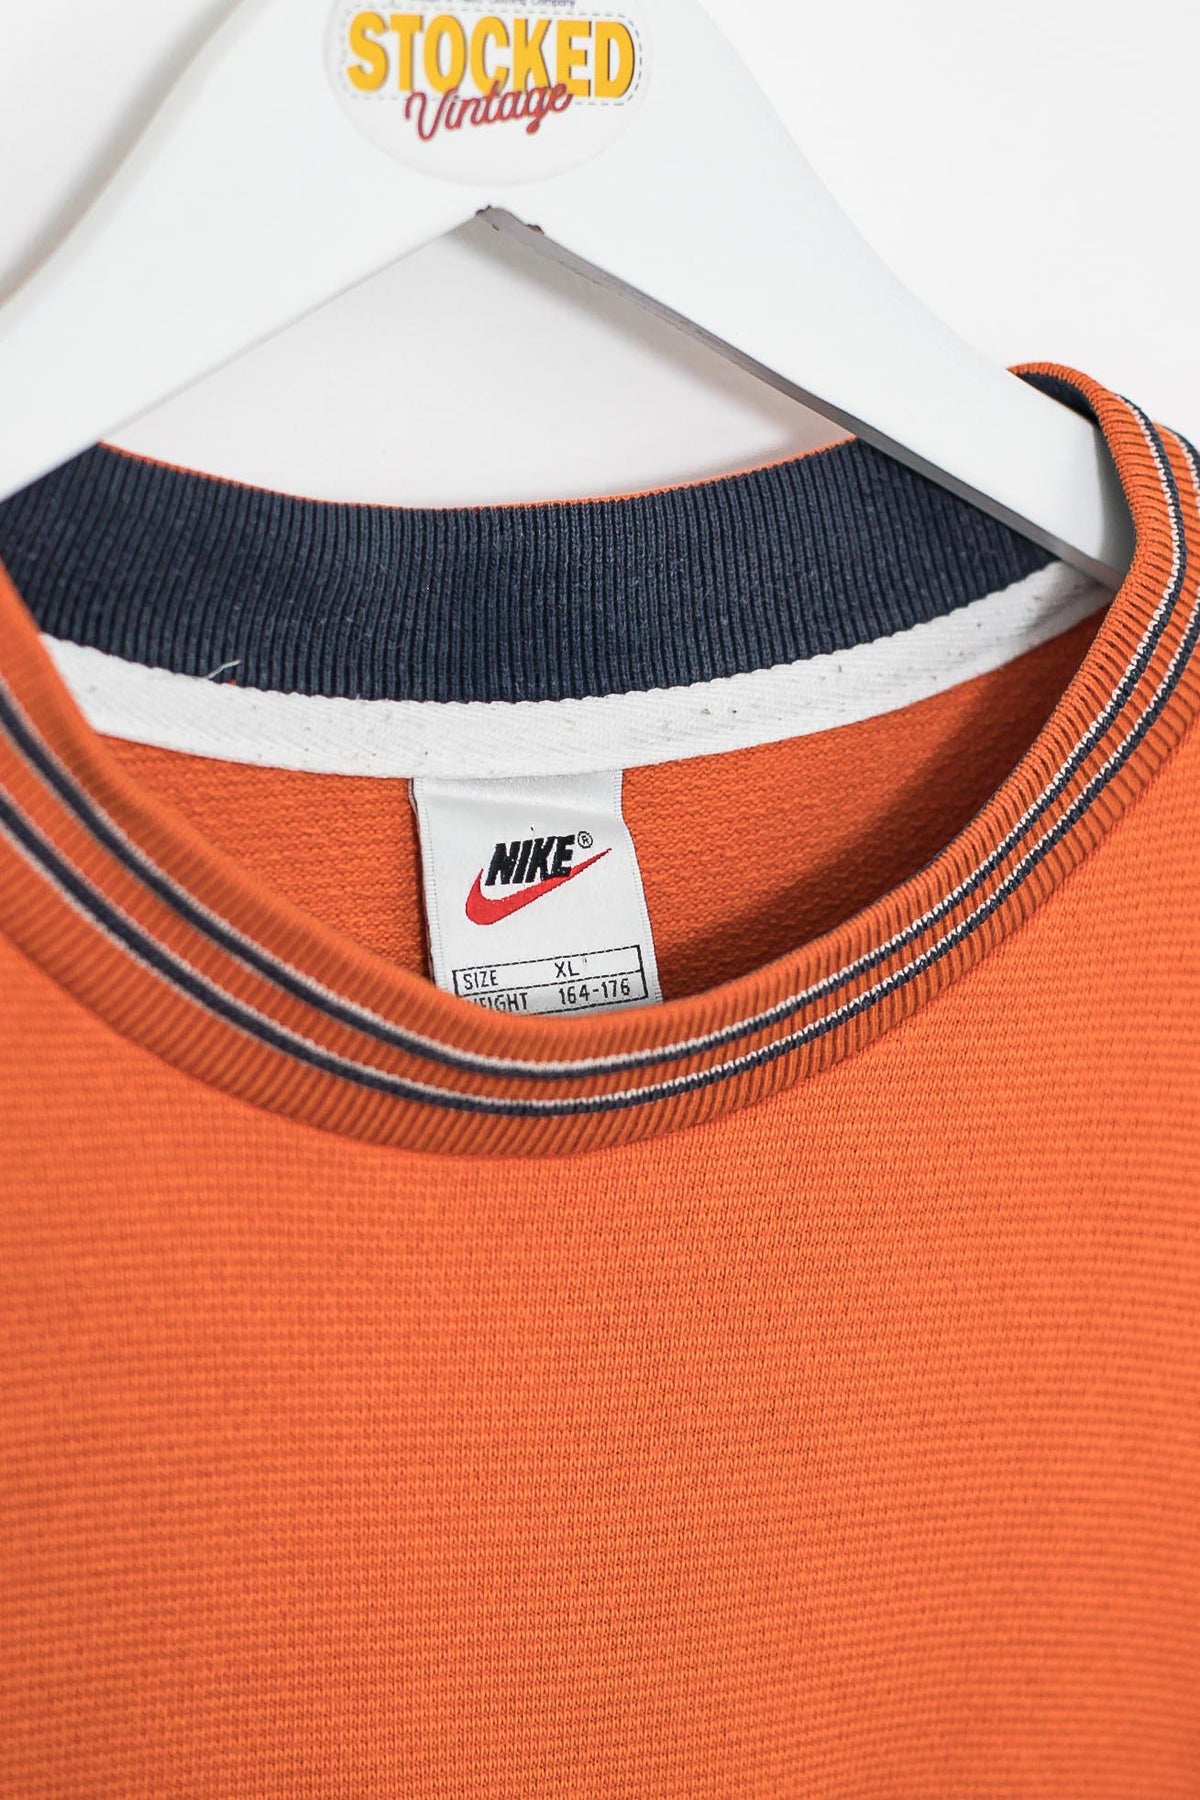 90s Nike Sweatshirt (S)